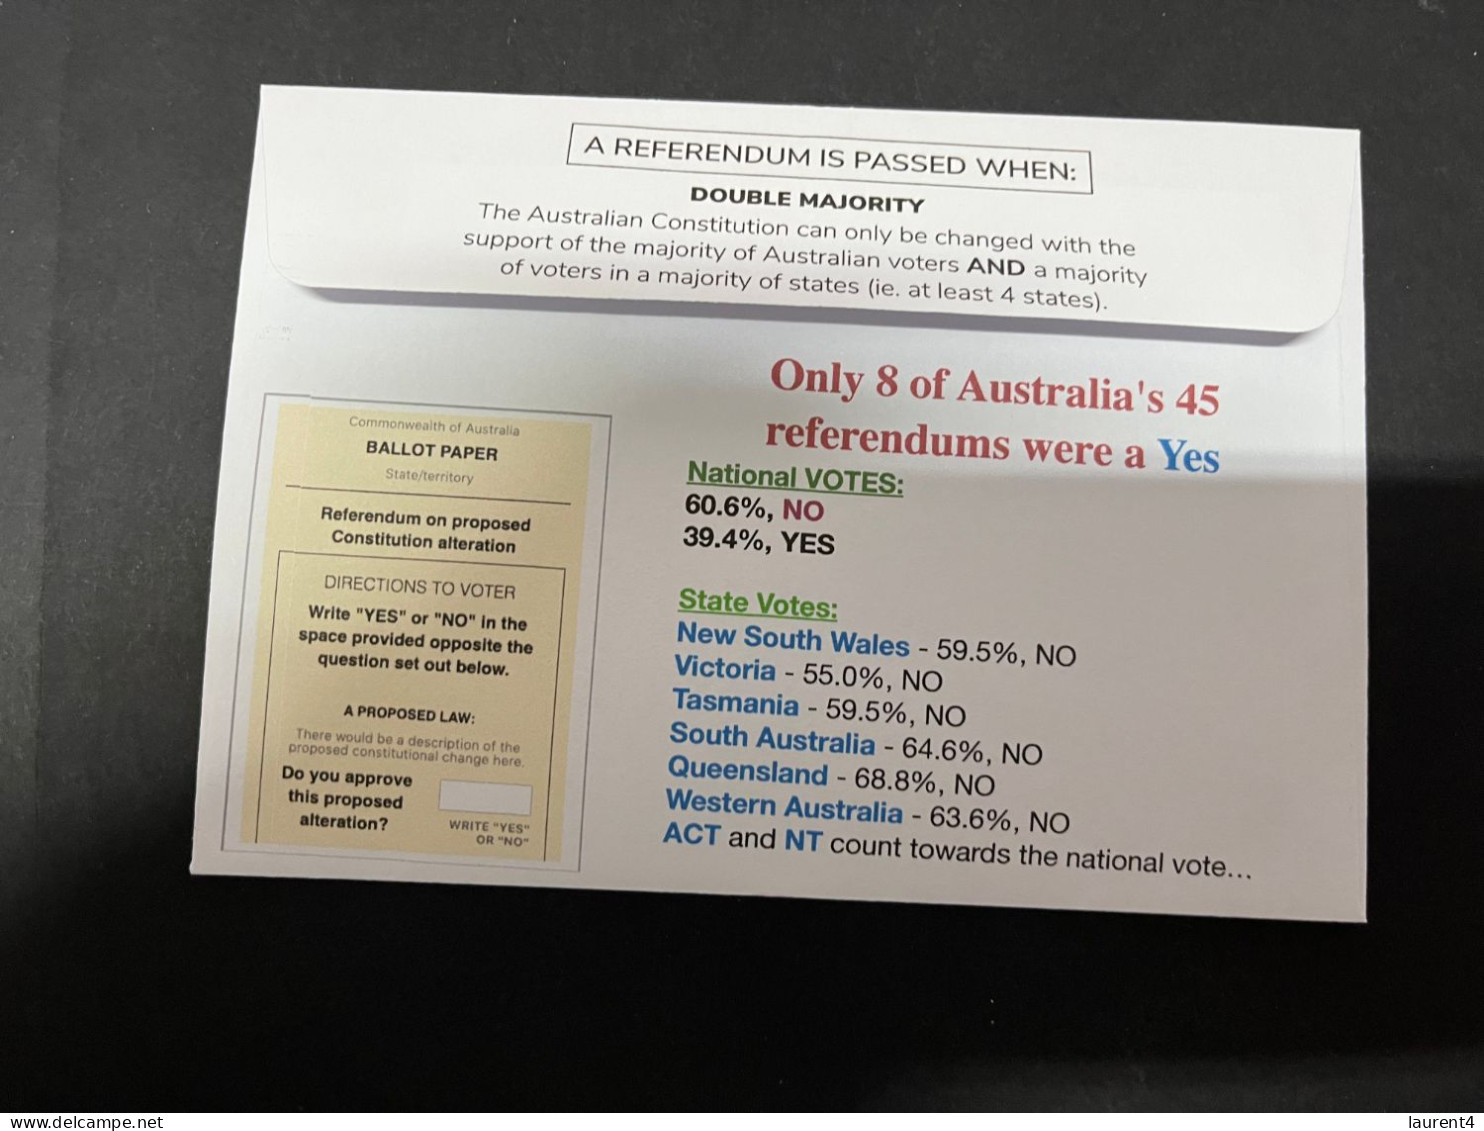 17-10-2023 (4 T 29) Australia Referendum 14-10-2023 - Aborignal & Torres Strait Islander Voice - Voted NO 60.6% - Cartas & Documentos